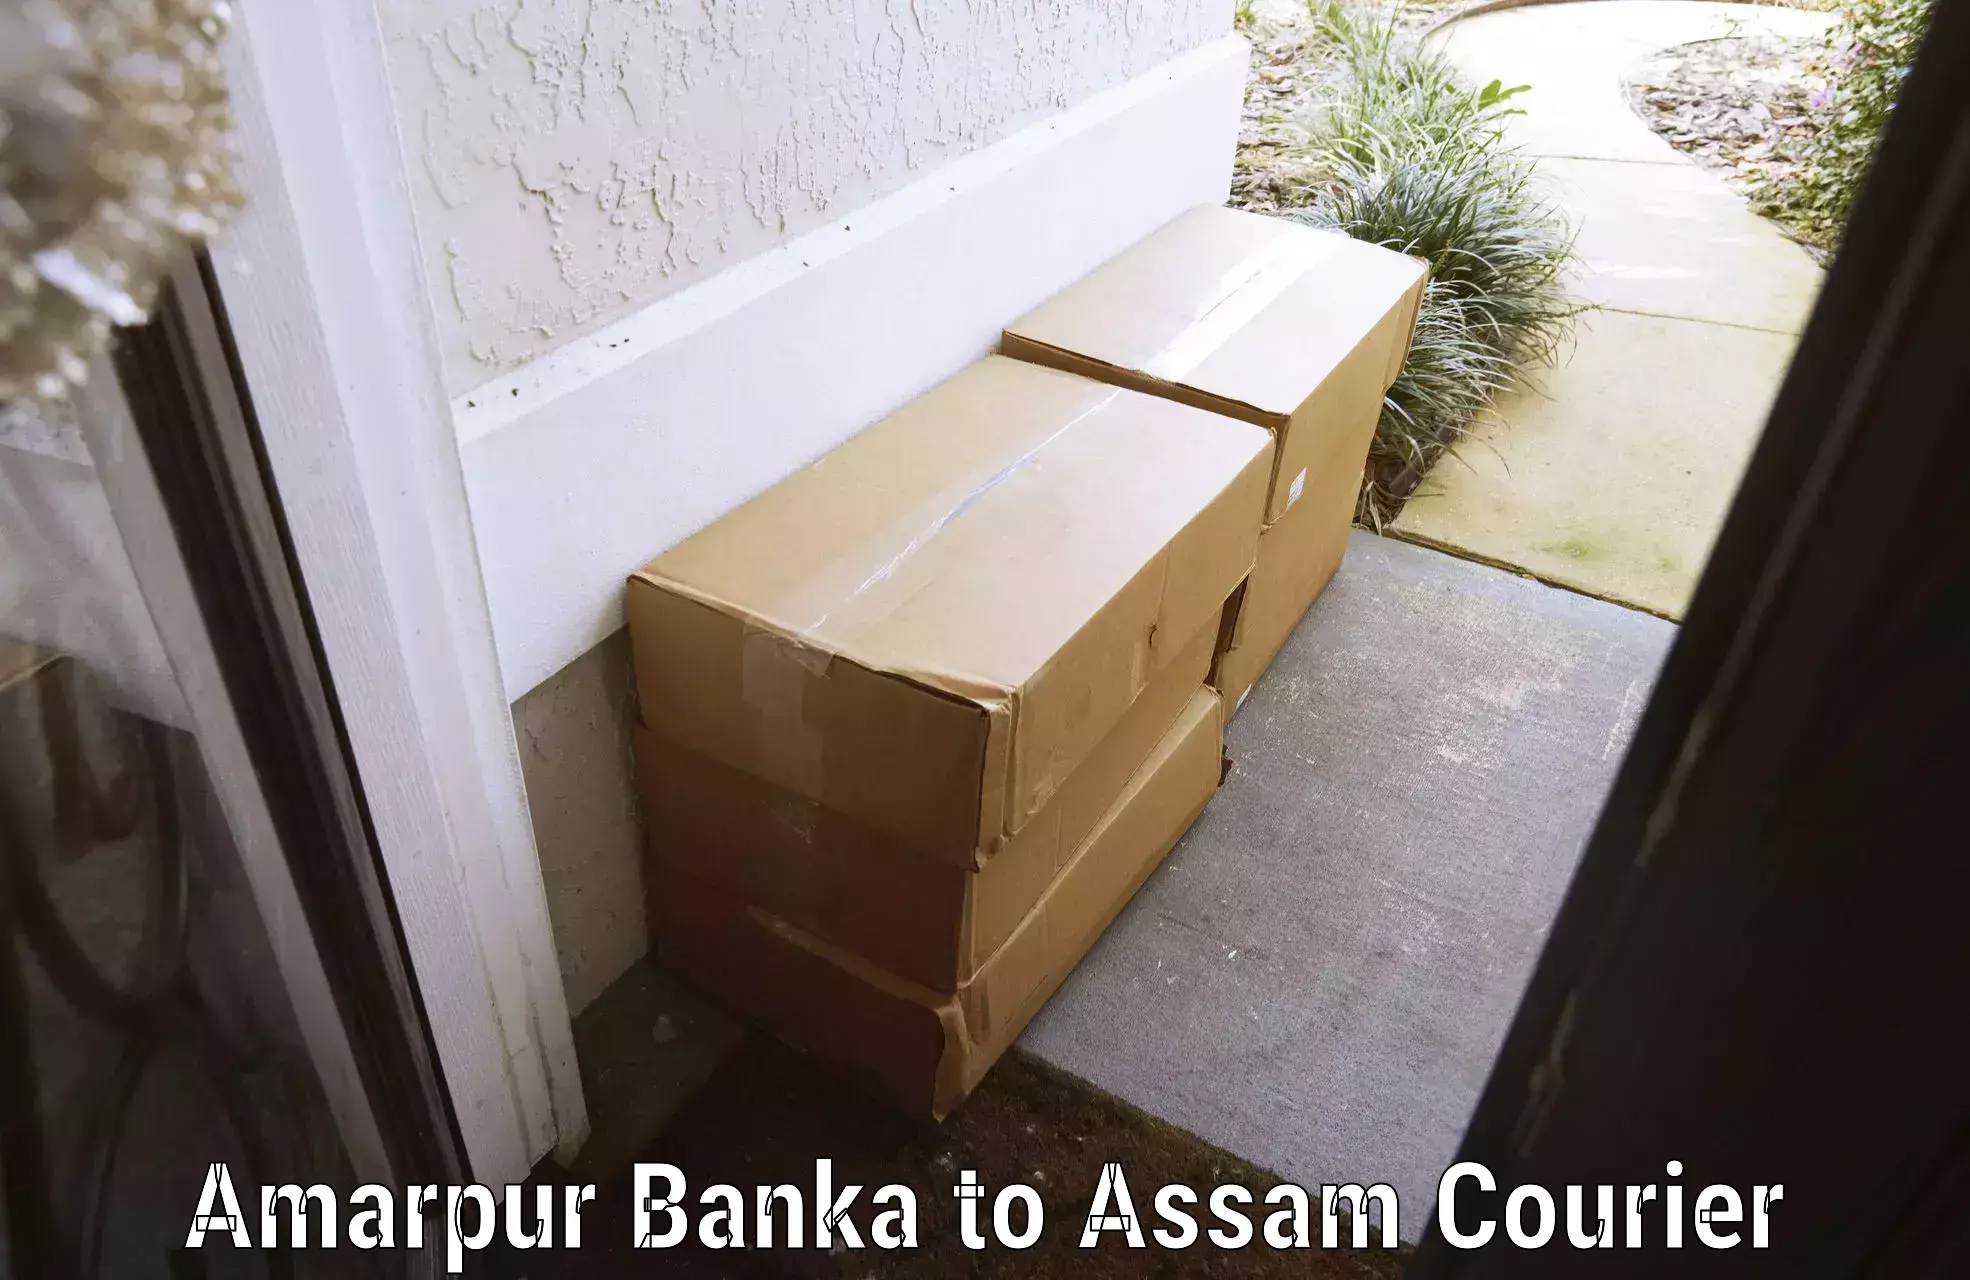 Baggage delivery solutions Amarpur Banka to Baksha Bodoland